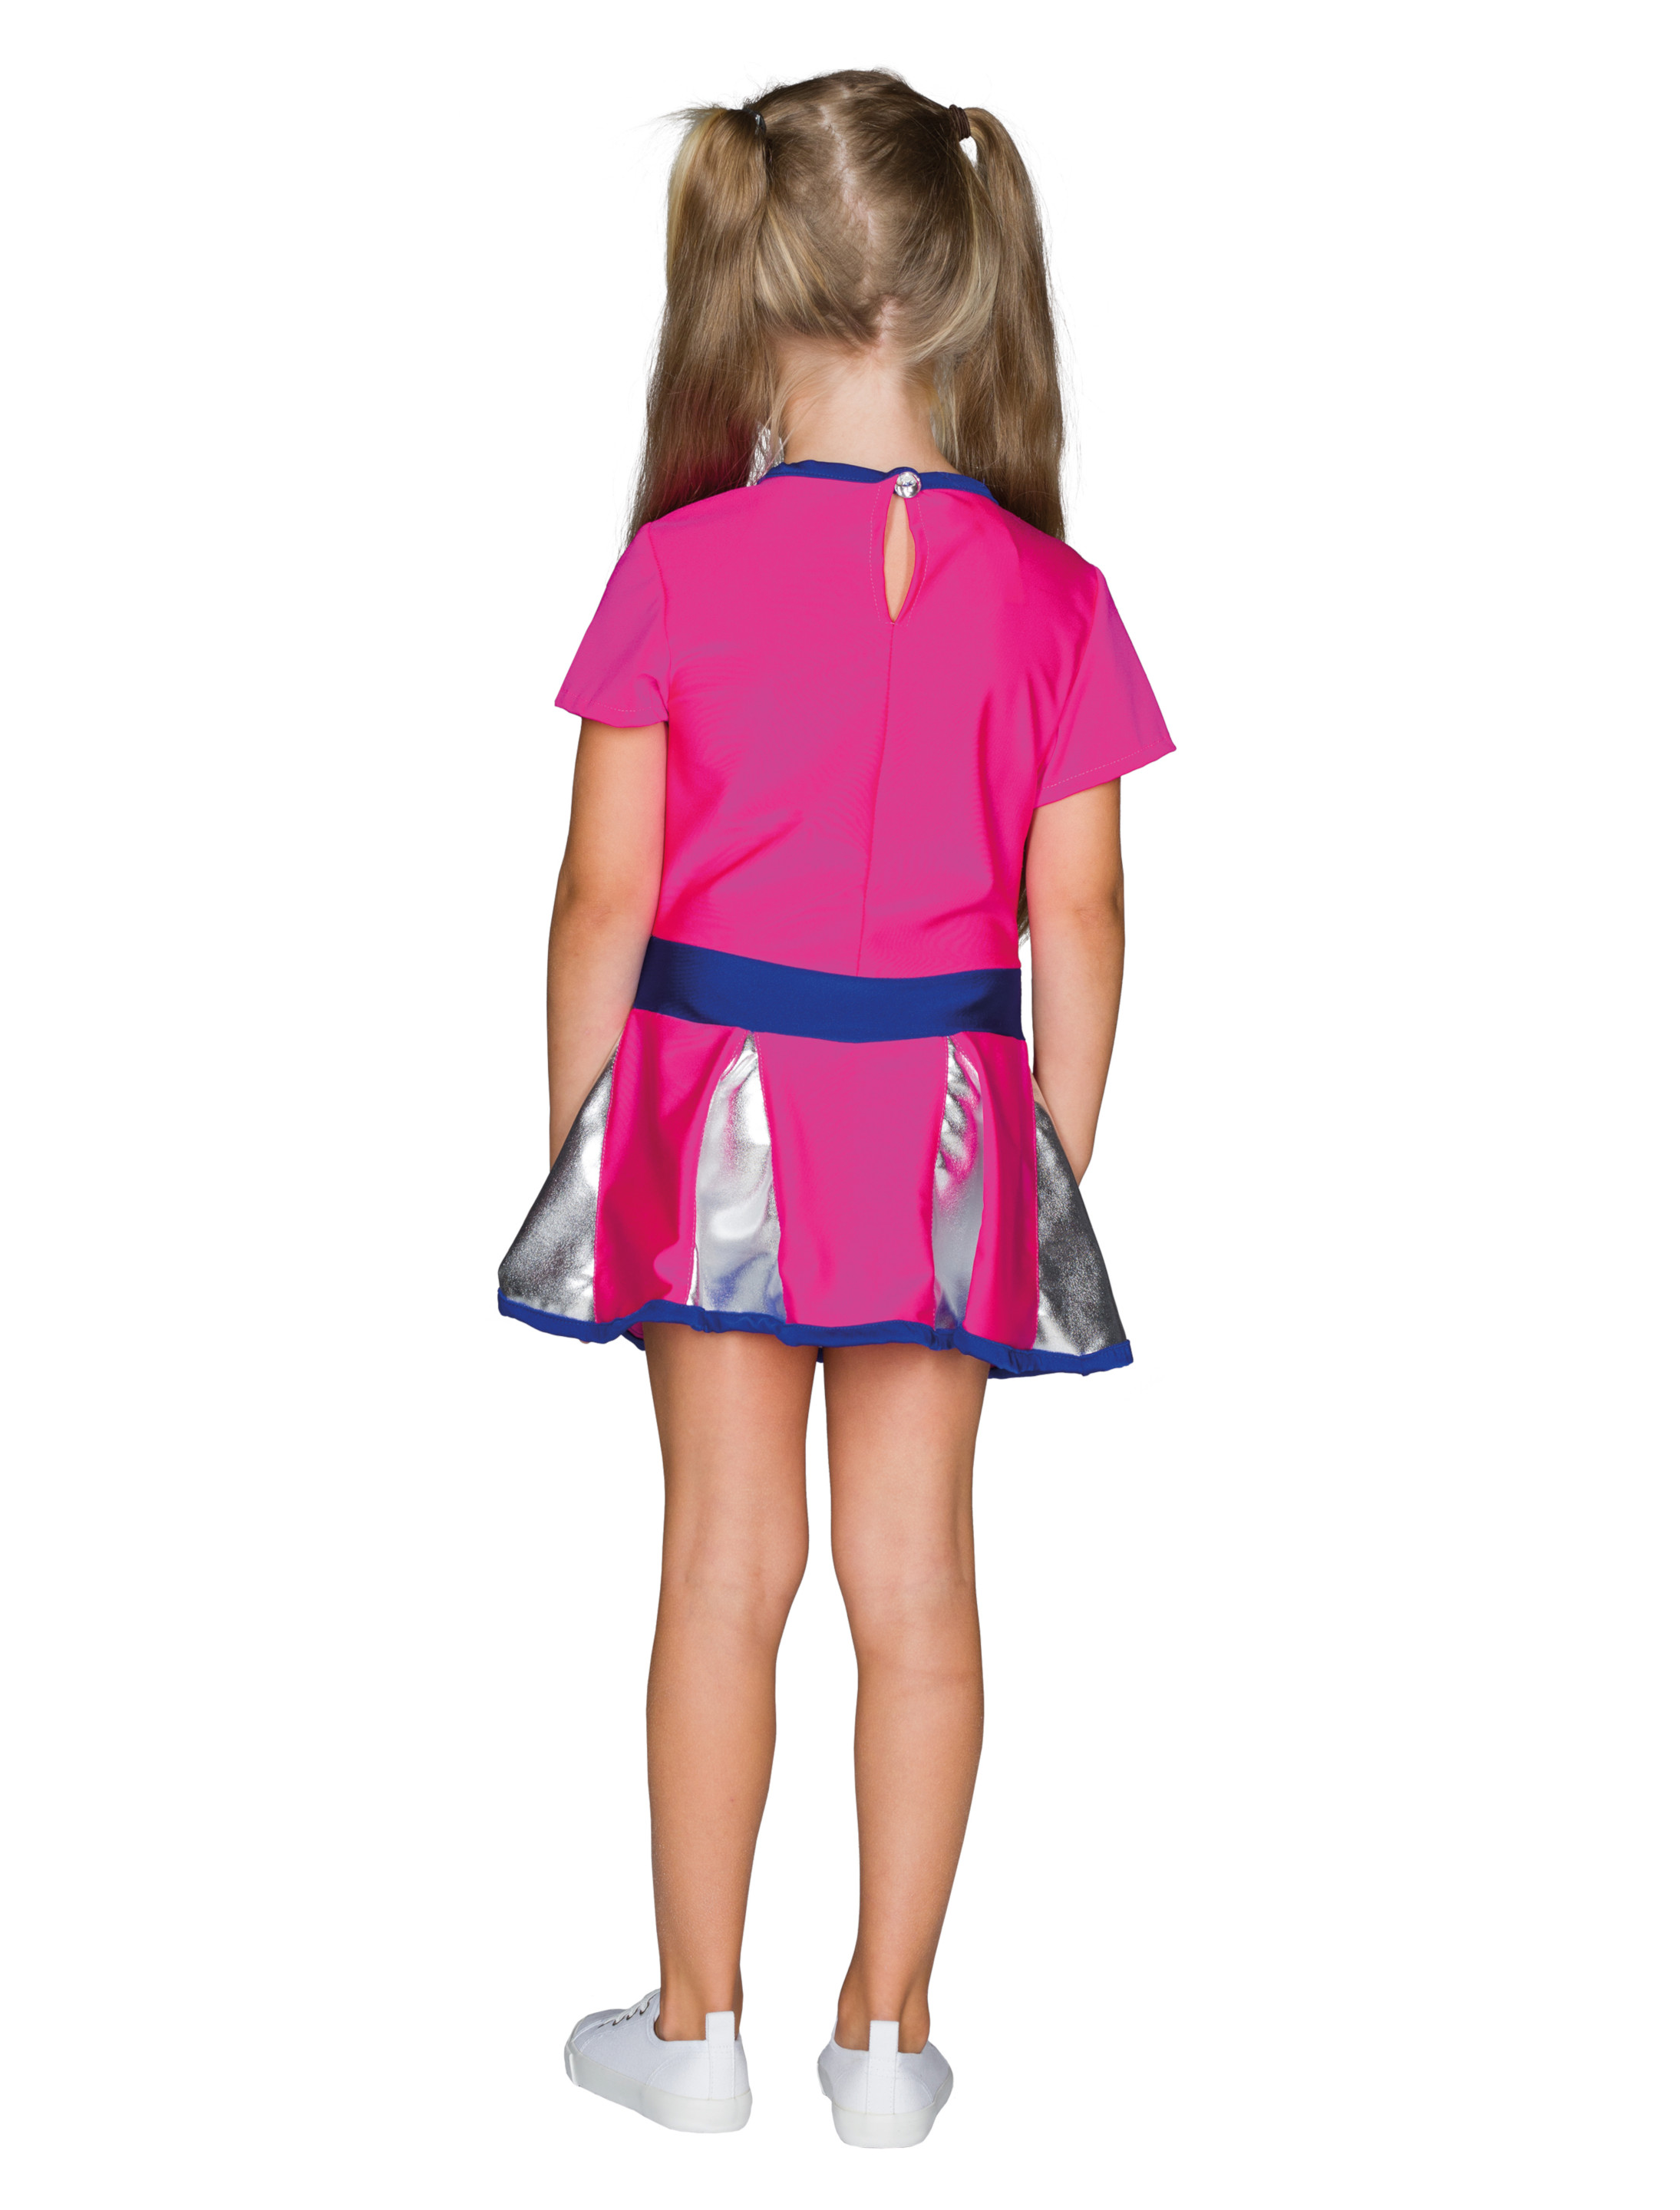 Kleid Cheerleader Kinder pink/silber 128